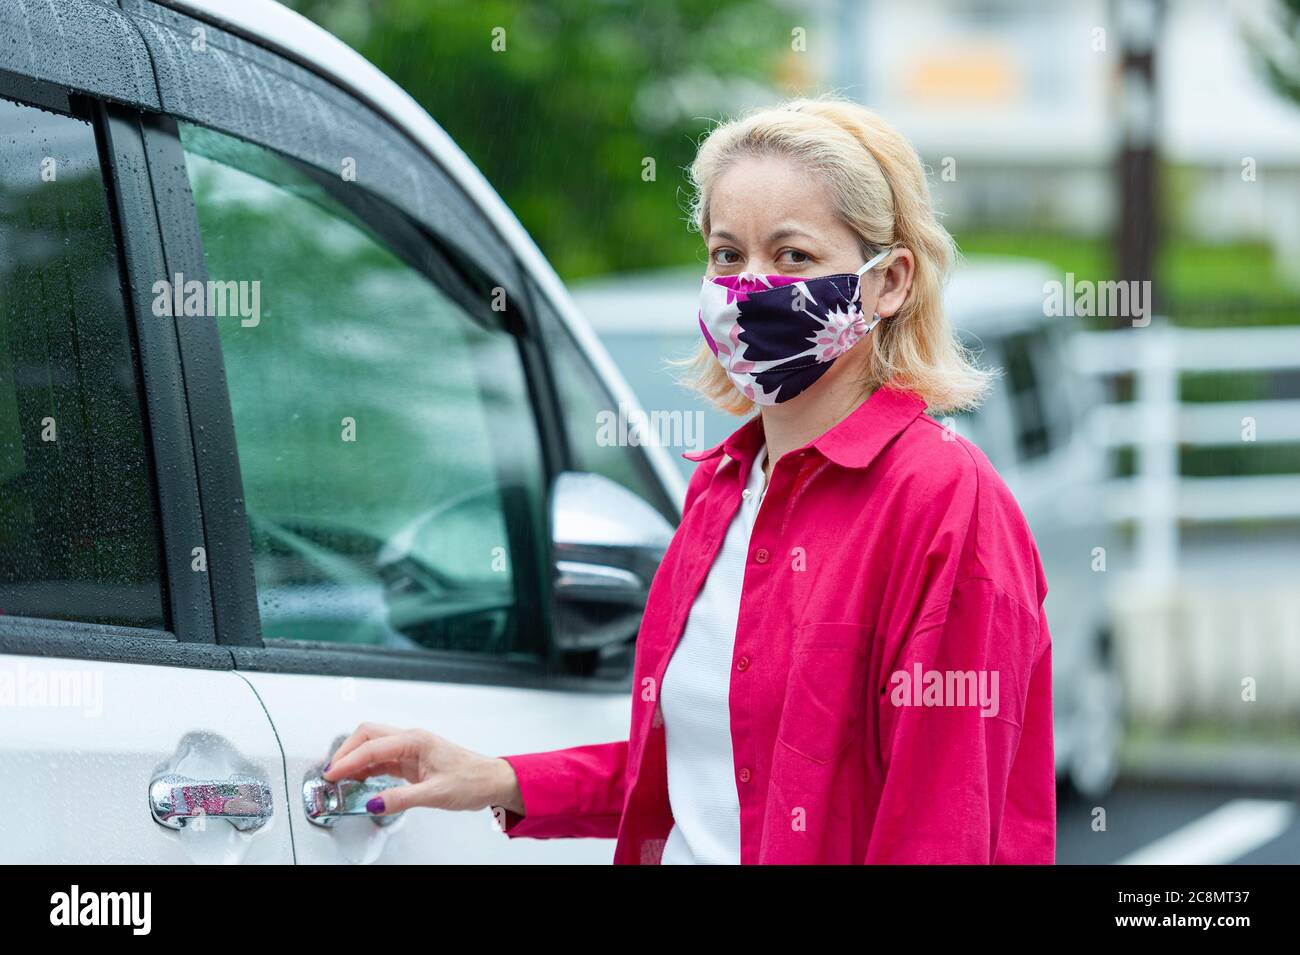 Pandémie COVID19 - Portrait d'une femme de race mixte portant un masque facial en tissu maison de bricolage pour la protection contre le coronavirus Banque D'Images